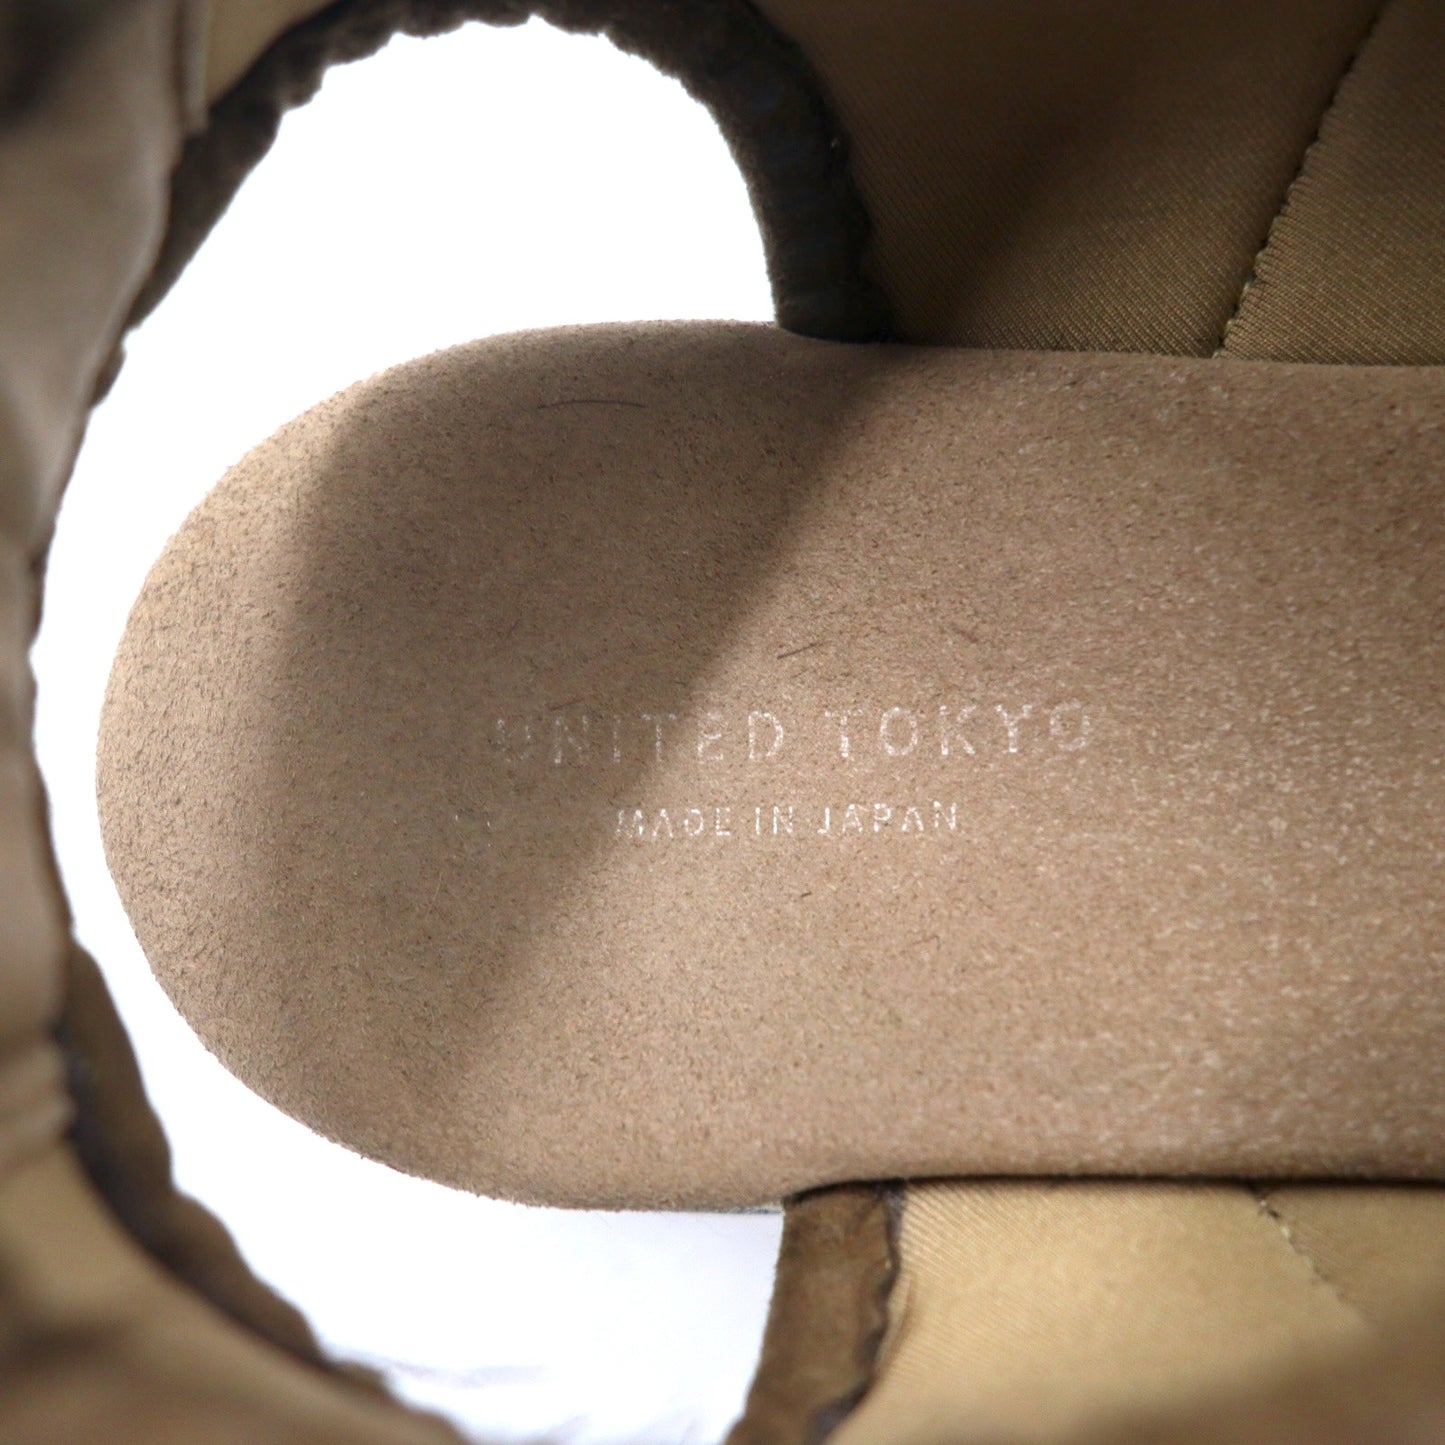 UNITED TOKYO エアマルチソールサンダル 26.5-27cm ベージュ スエードレザー 日本製